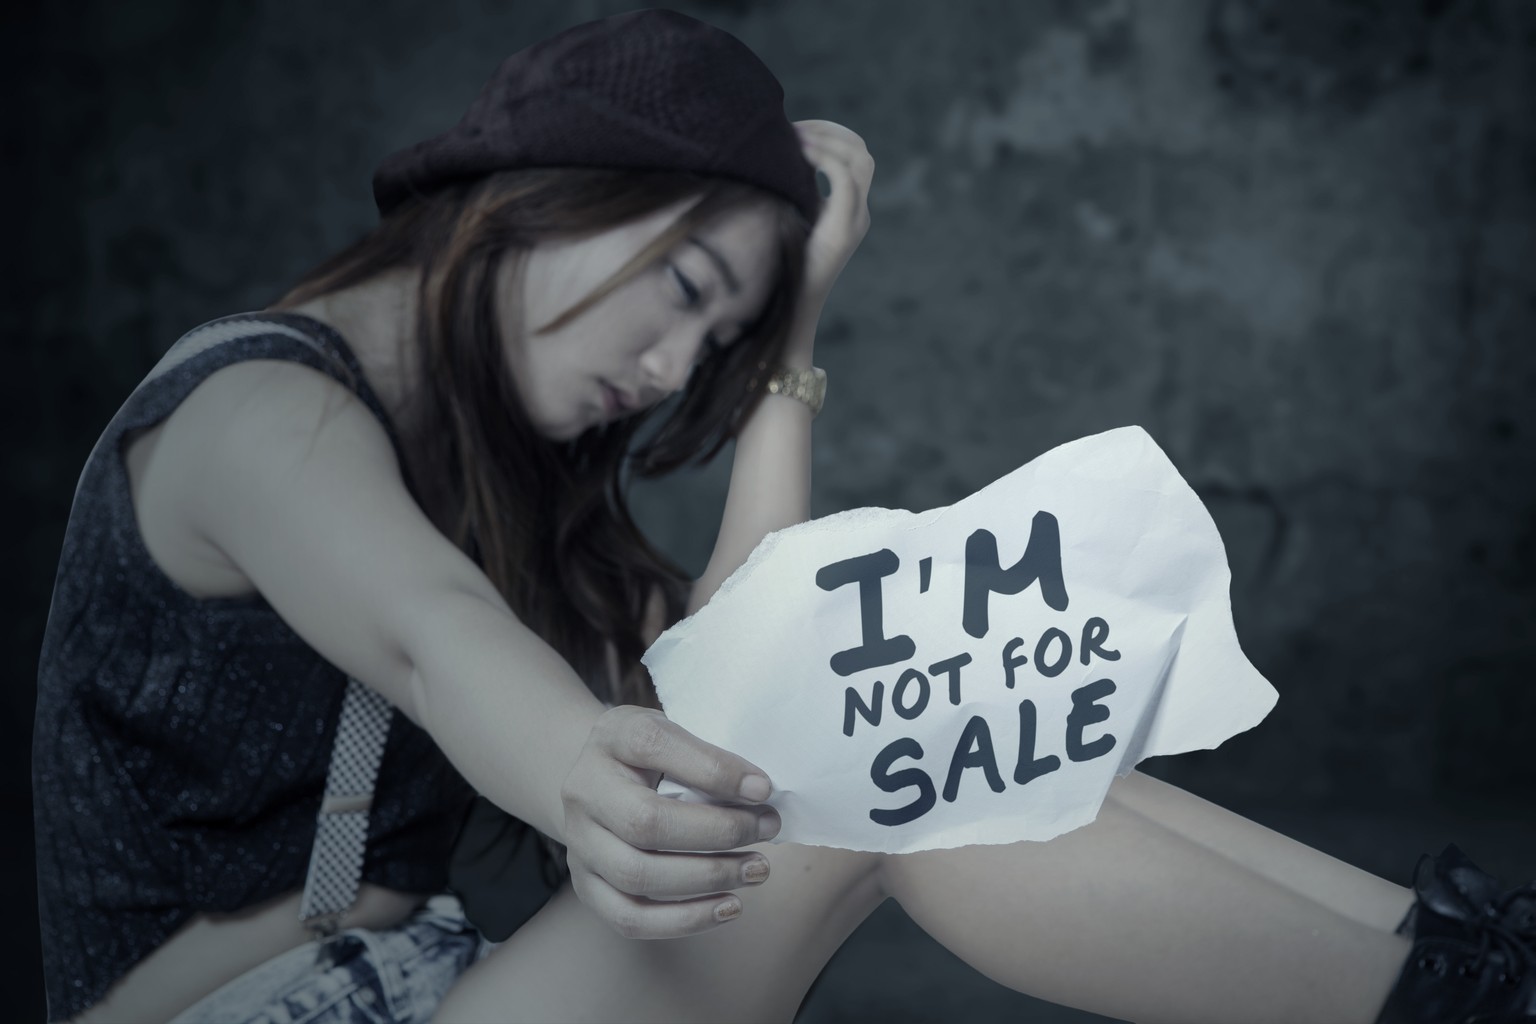 Menschenhandel, Frauenhandel, Prostitution, Ausbeutung